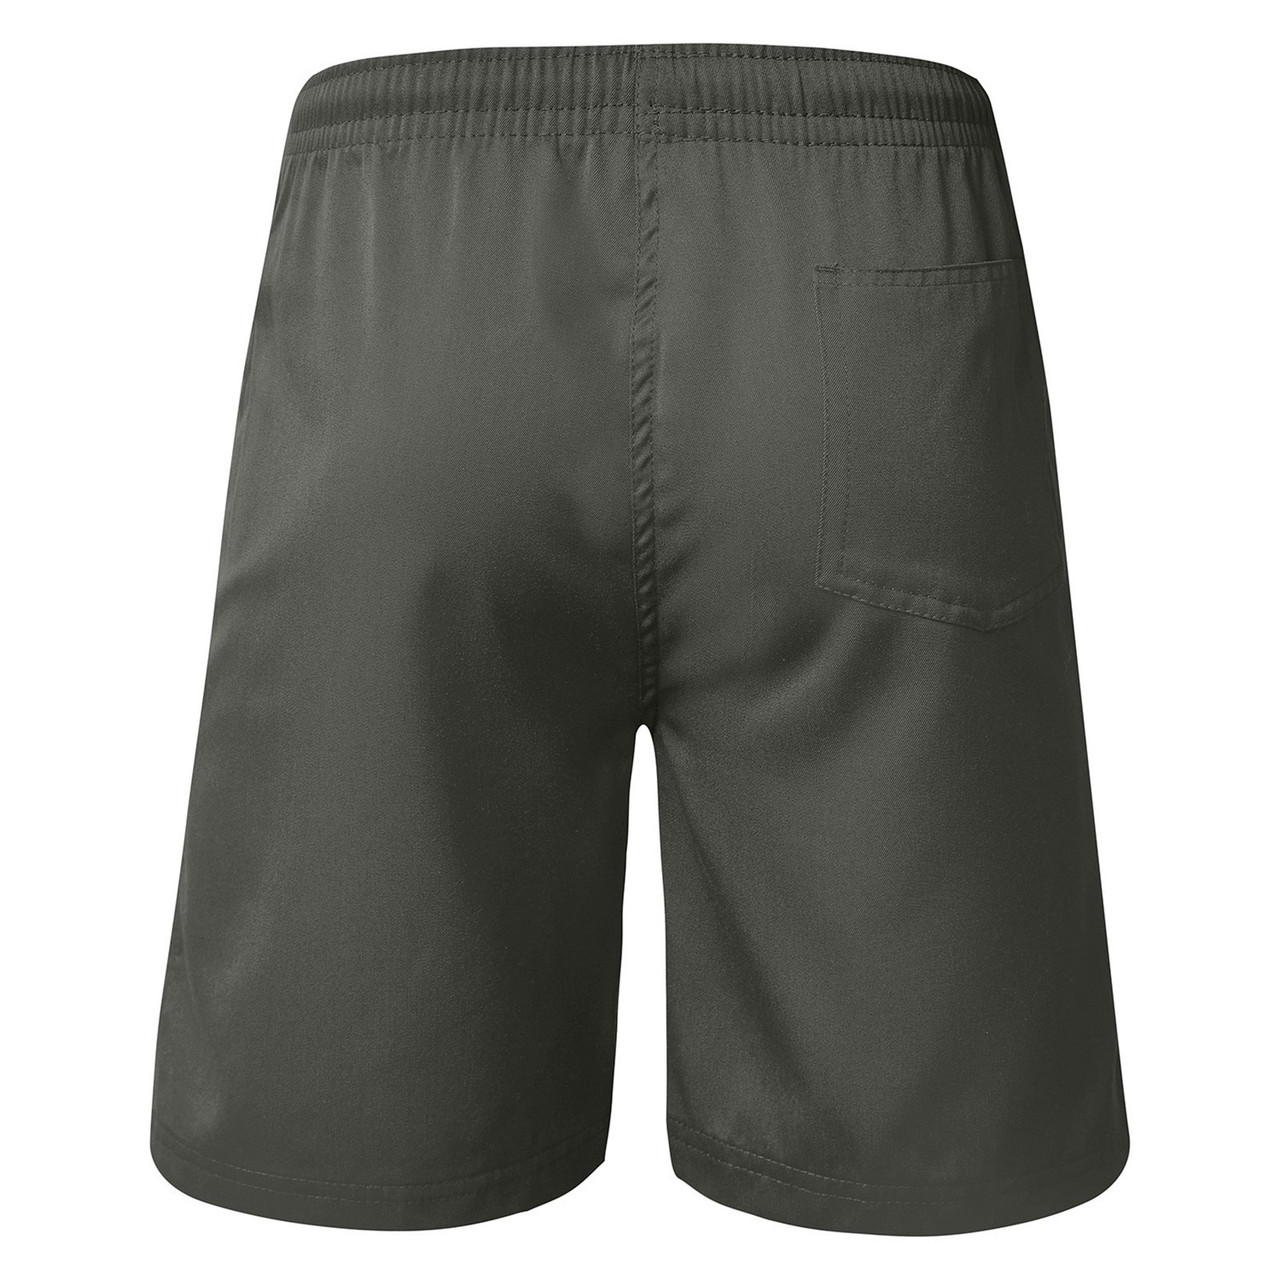 PREFECT | High School Shorts | Boys | buy online | blankclothing.com.au